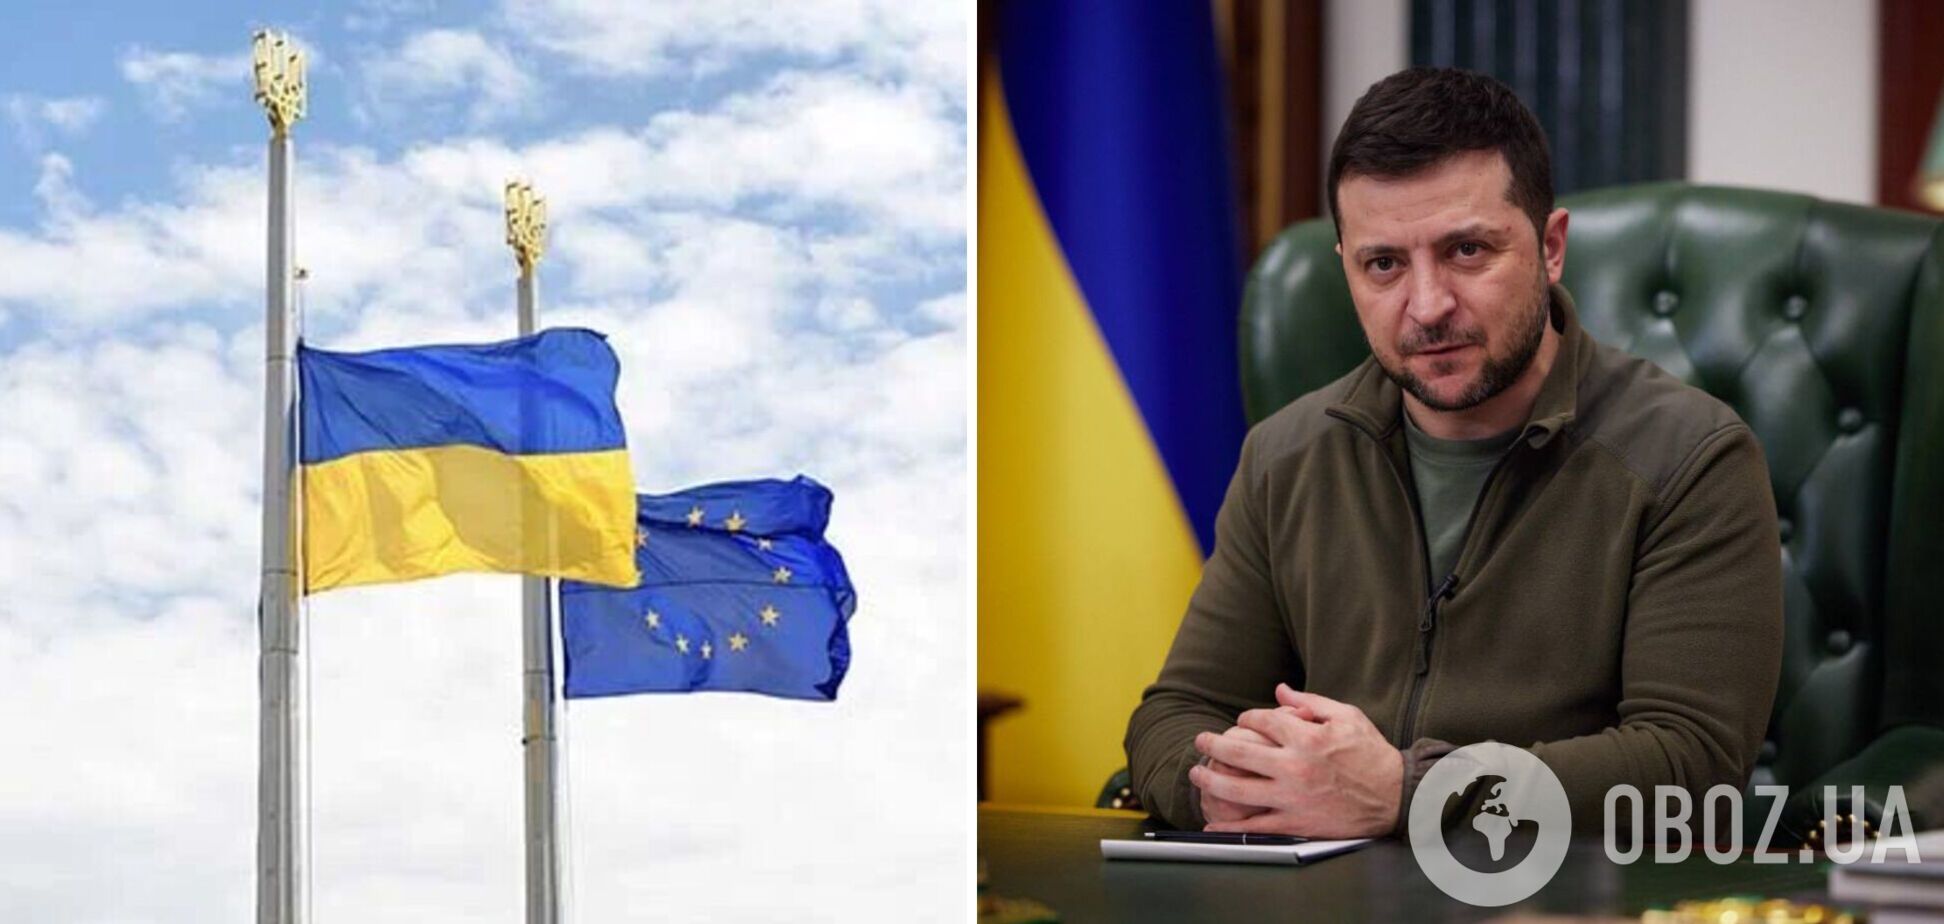 Ожидаем новостей и положительных решений: Зеленский анонсировал новые реформы накануне саммита Украина – ЕС